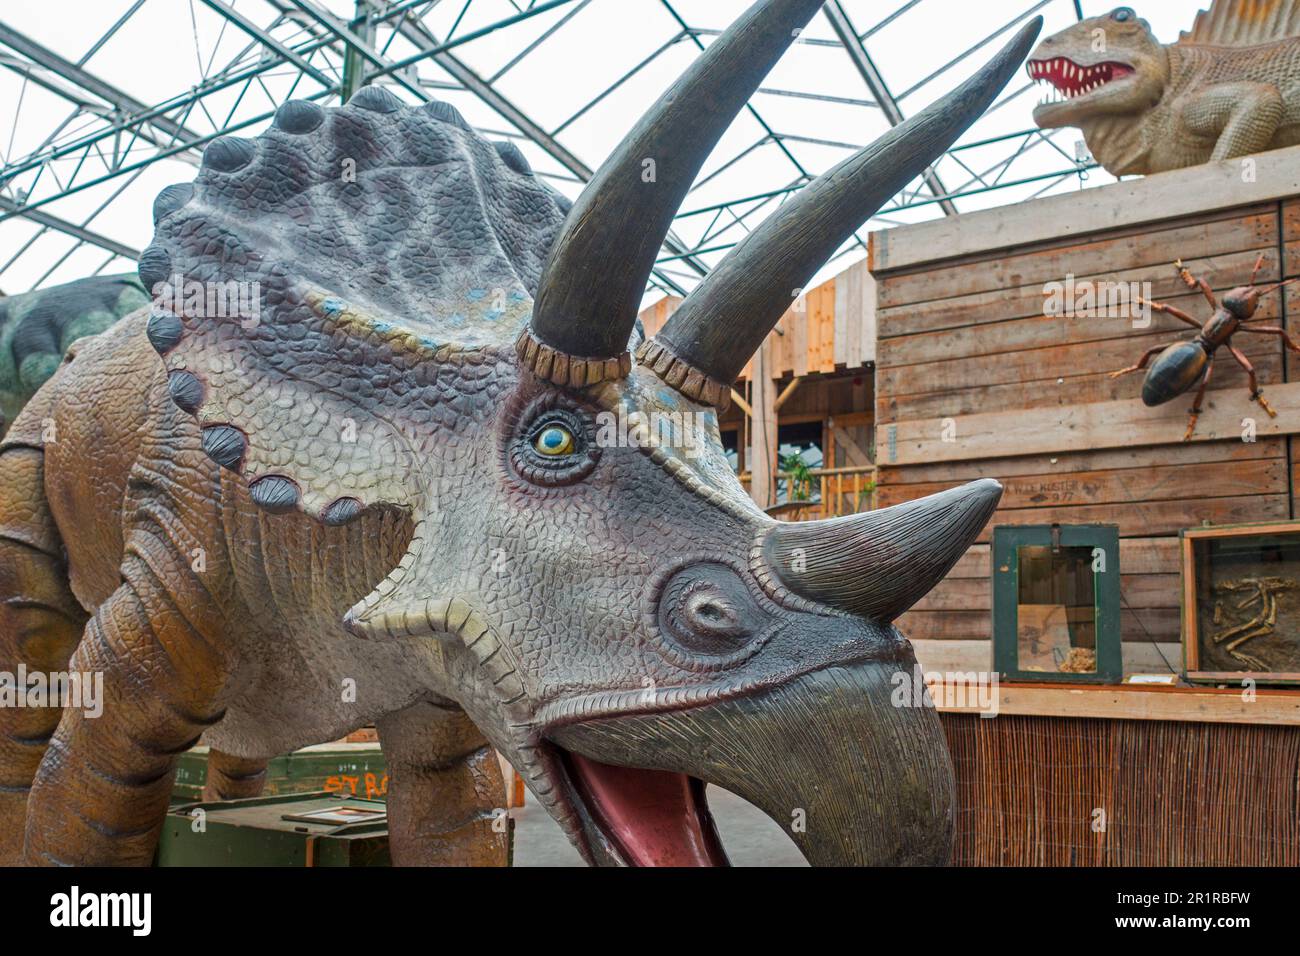 Des répliques de dinosaures géants exposées au zoo tropical de Berkenhof, parc d'attractions et d'animaux près de Kwadendamme, Zeeland, pays-Bas Banque D'Images